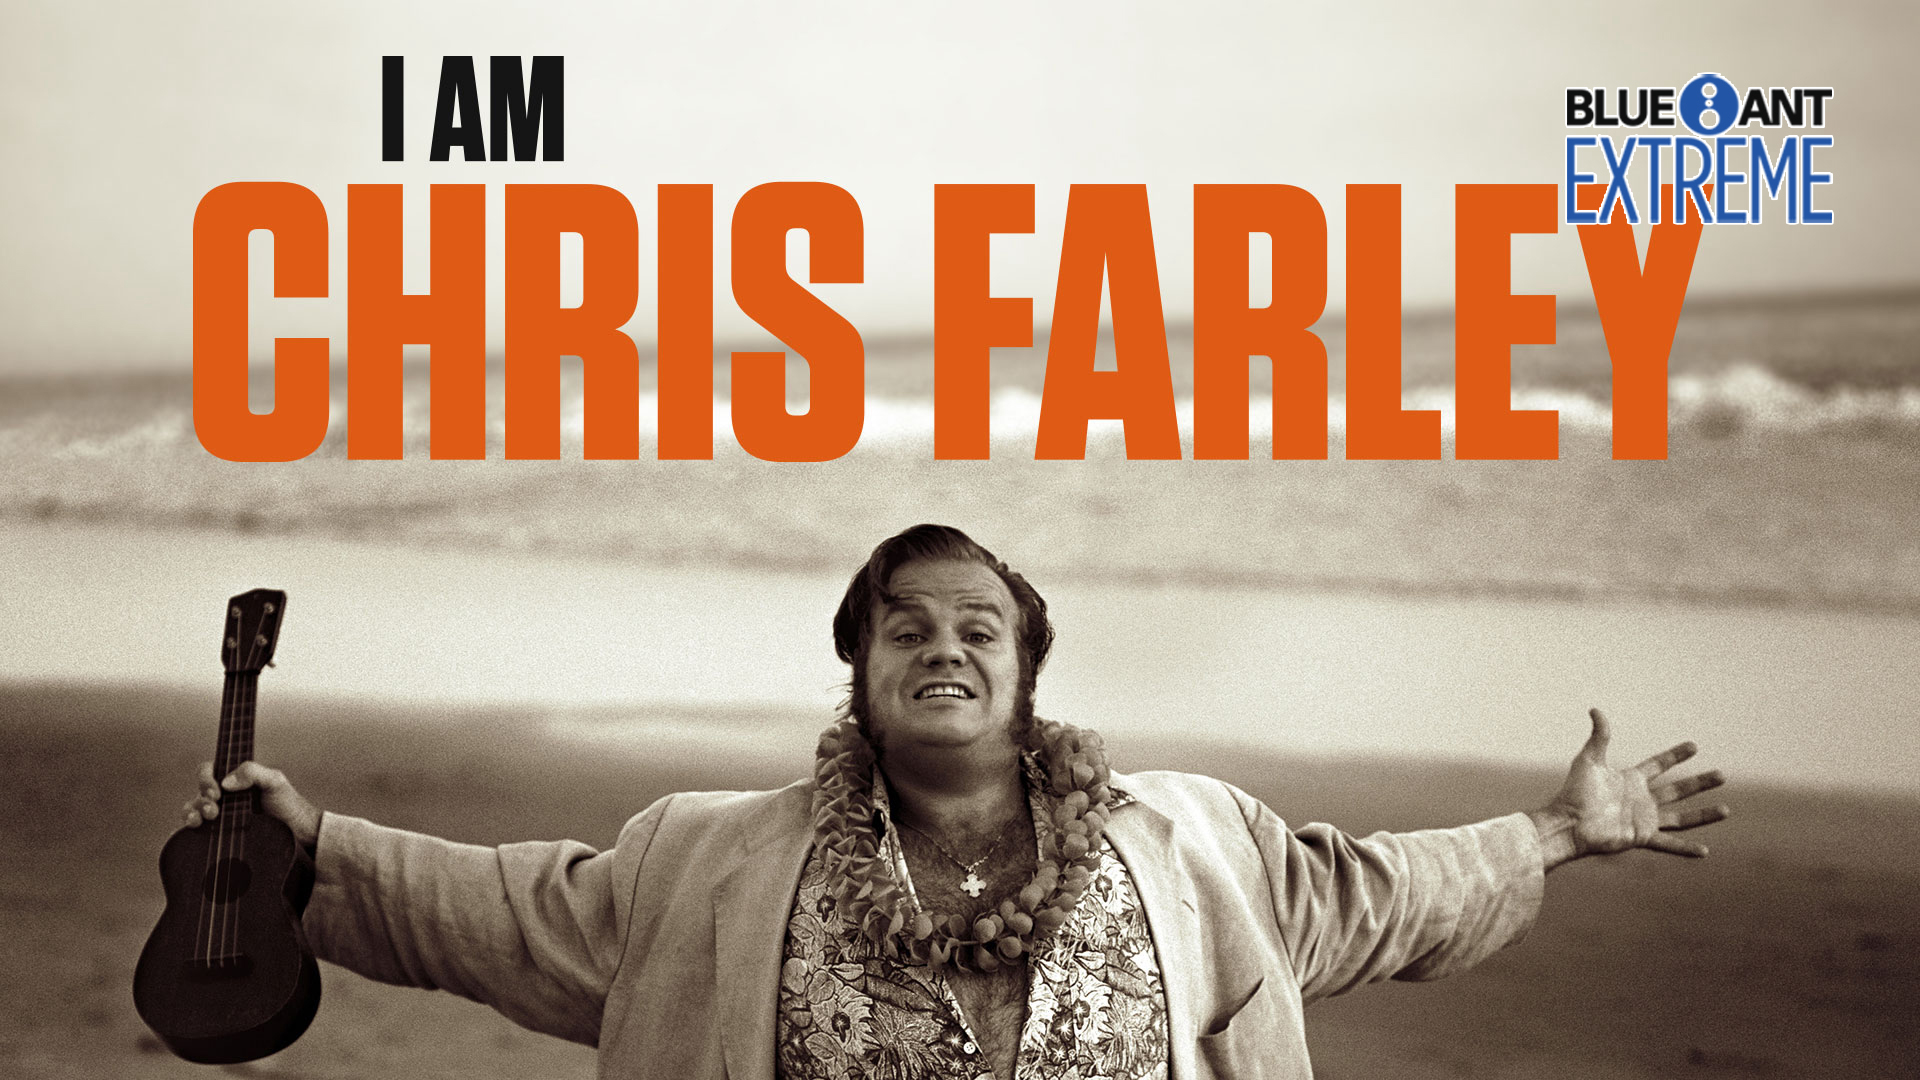 I Am Chris Farley / I Am Chris Farley (2015)